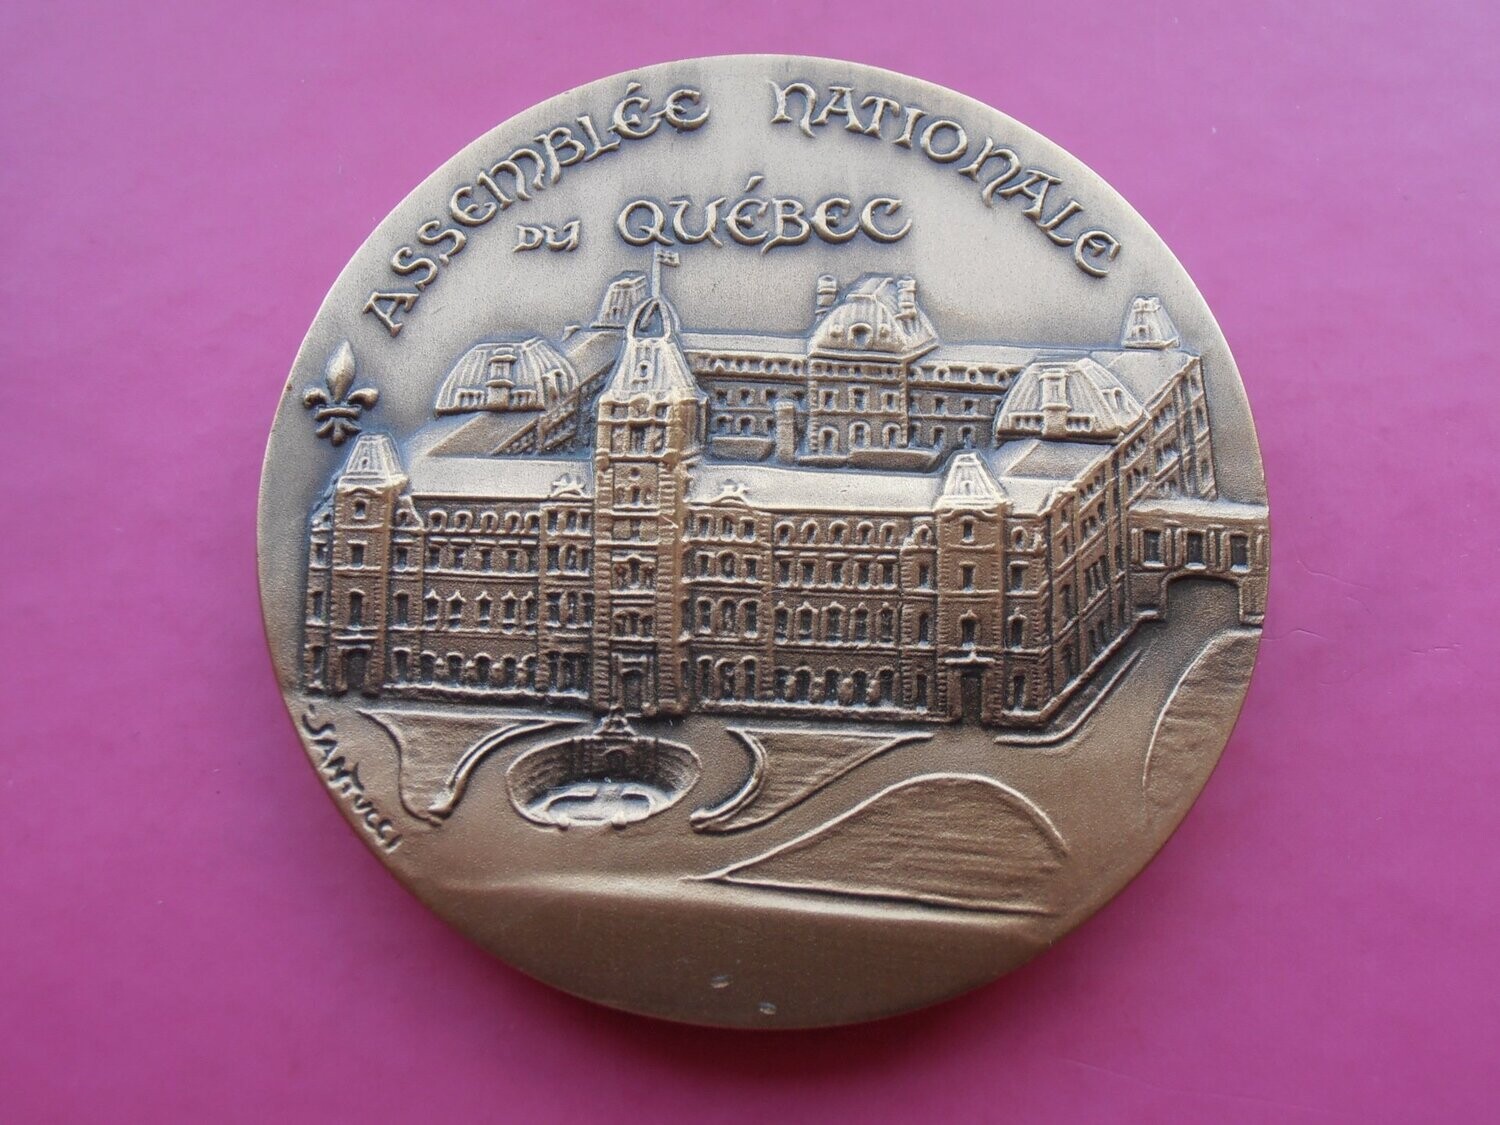 Quebec Assembly National Medal